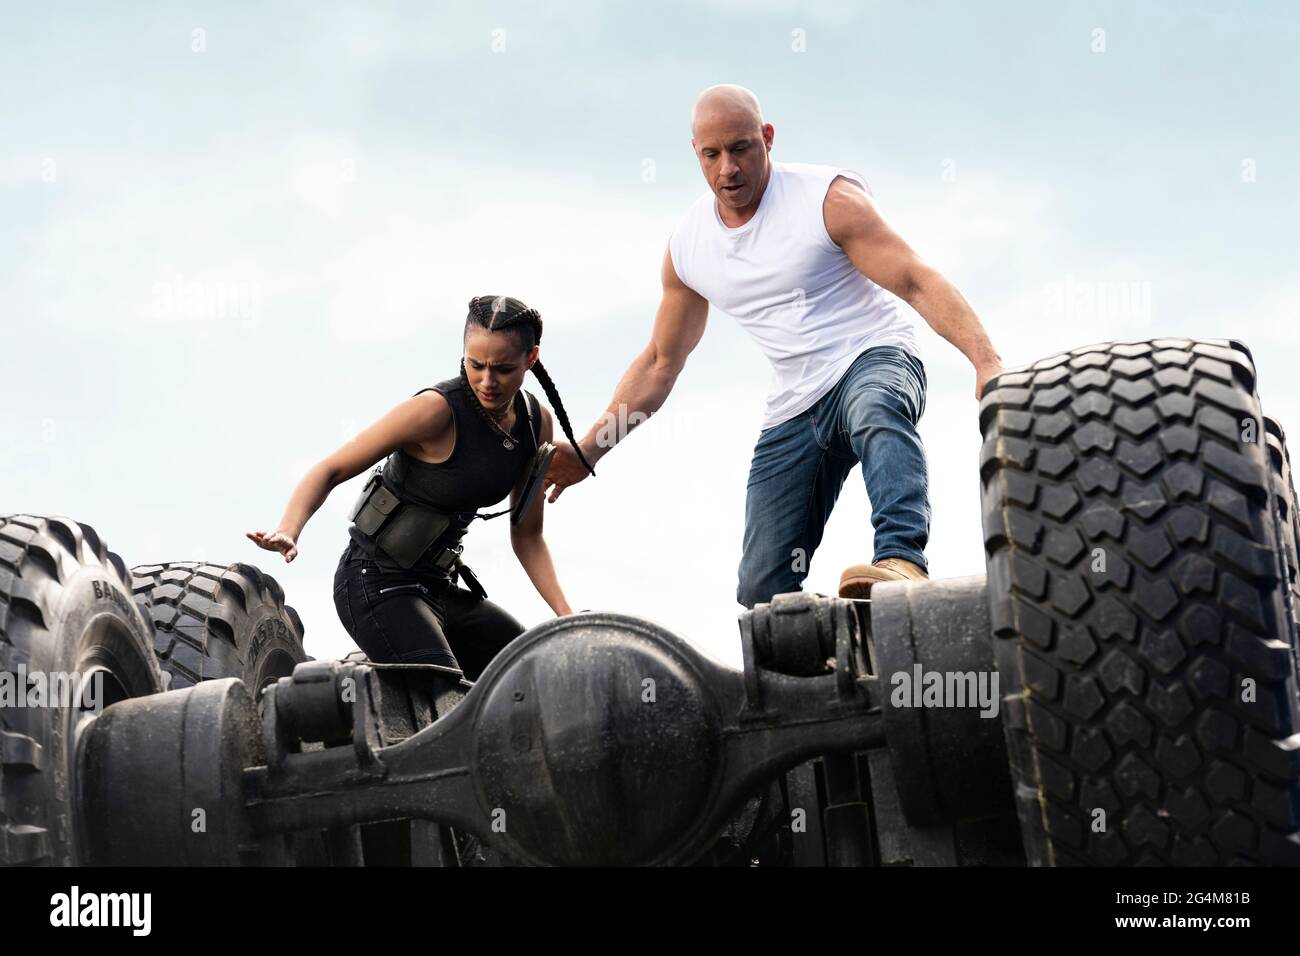 Fast & Furious 9 (2020) diretto da Justin Lin e con Vin Diesel e Amber Sienna, Michelle Rodriguez, John cena e Jordana Brewster. Dominic Toretto affronta un assassino che lavora con Cipher. Foto Stock